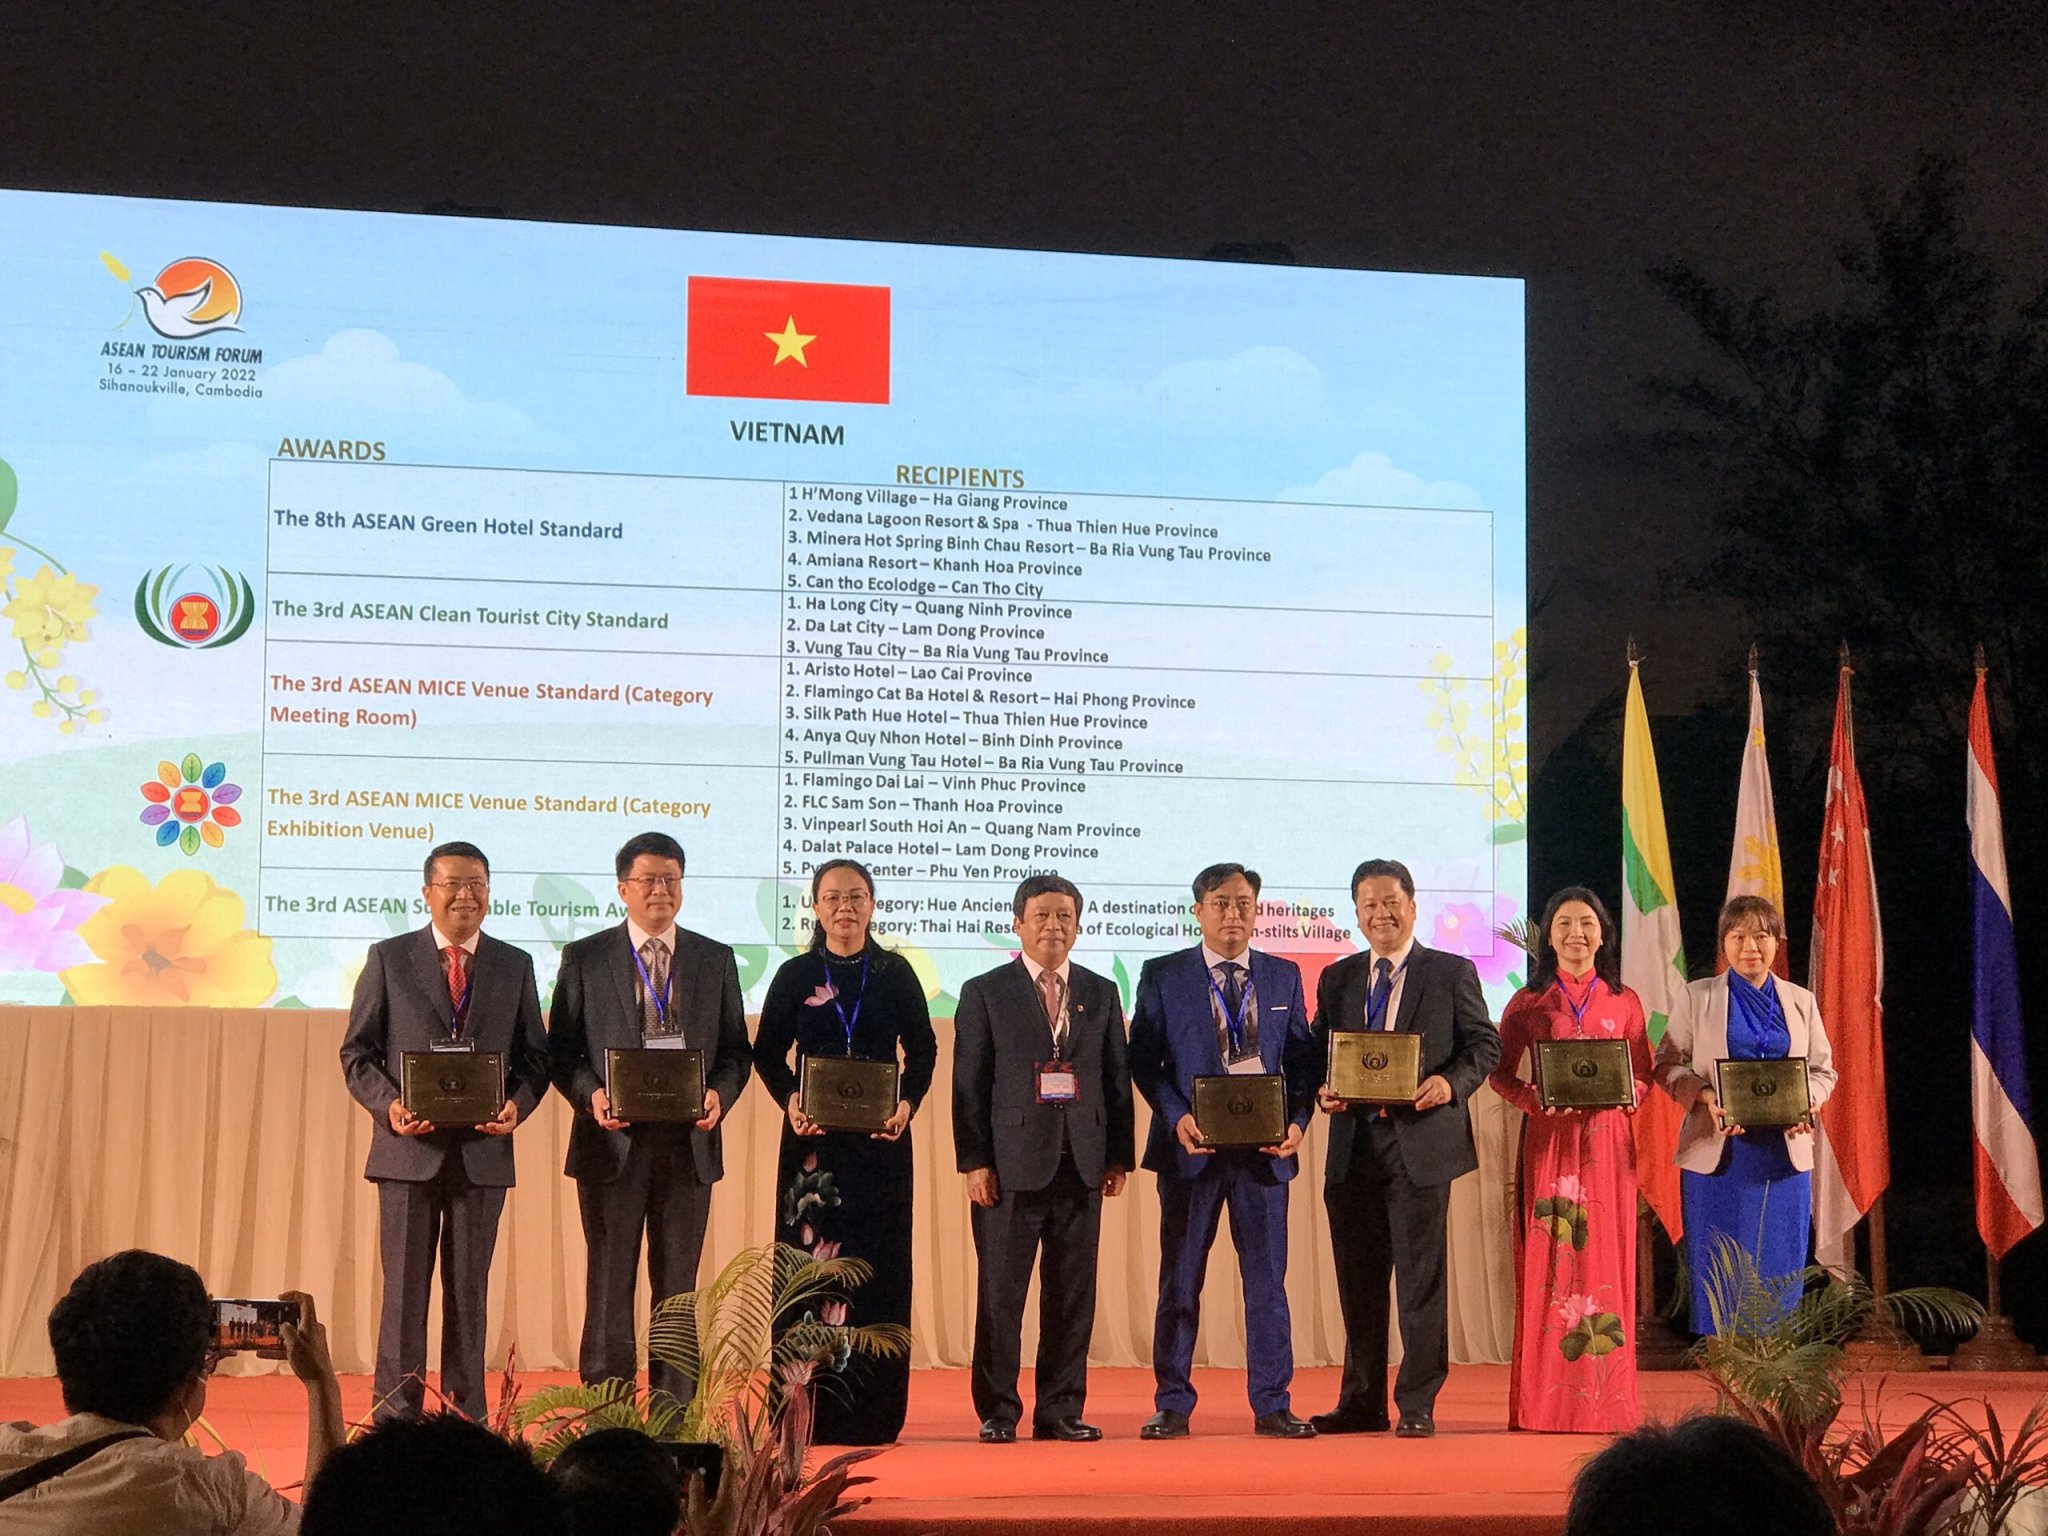 Trưởng đoàn Việt Nam - Thứ trưởng Bộ Văn hóa, Thể thao và Du lịch Đoàn Văn Việt trao giải thưởng cho đại diện các đơn vị, địa phương